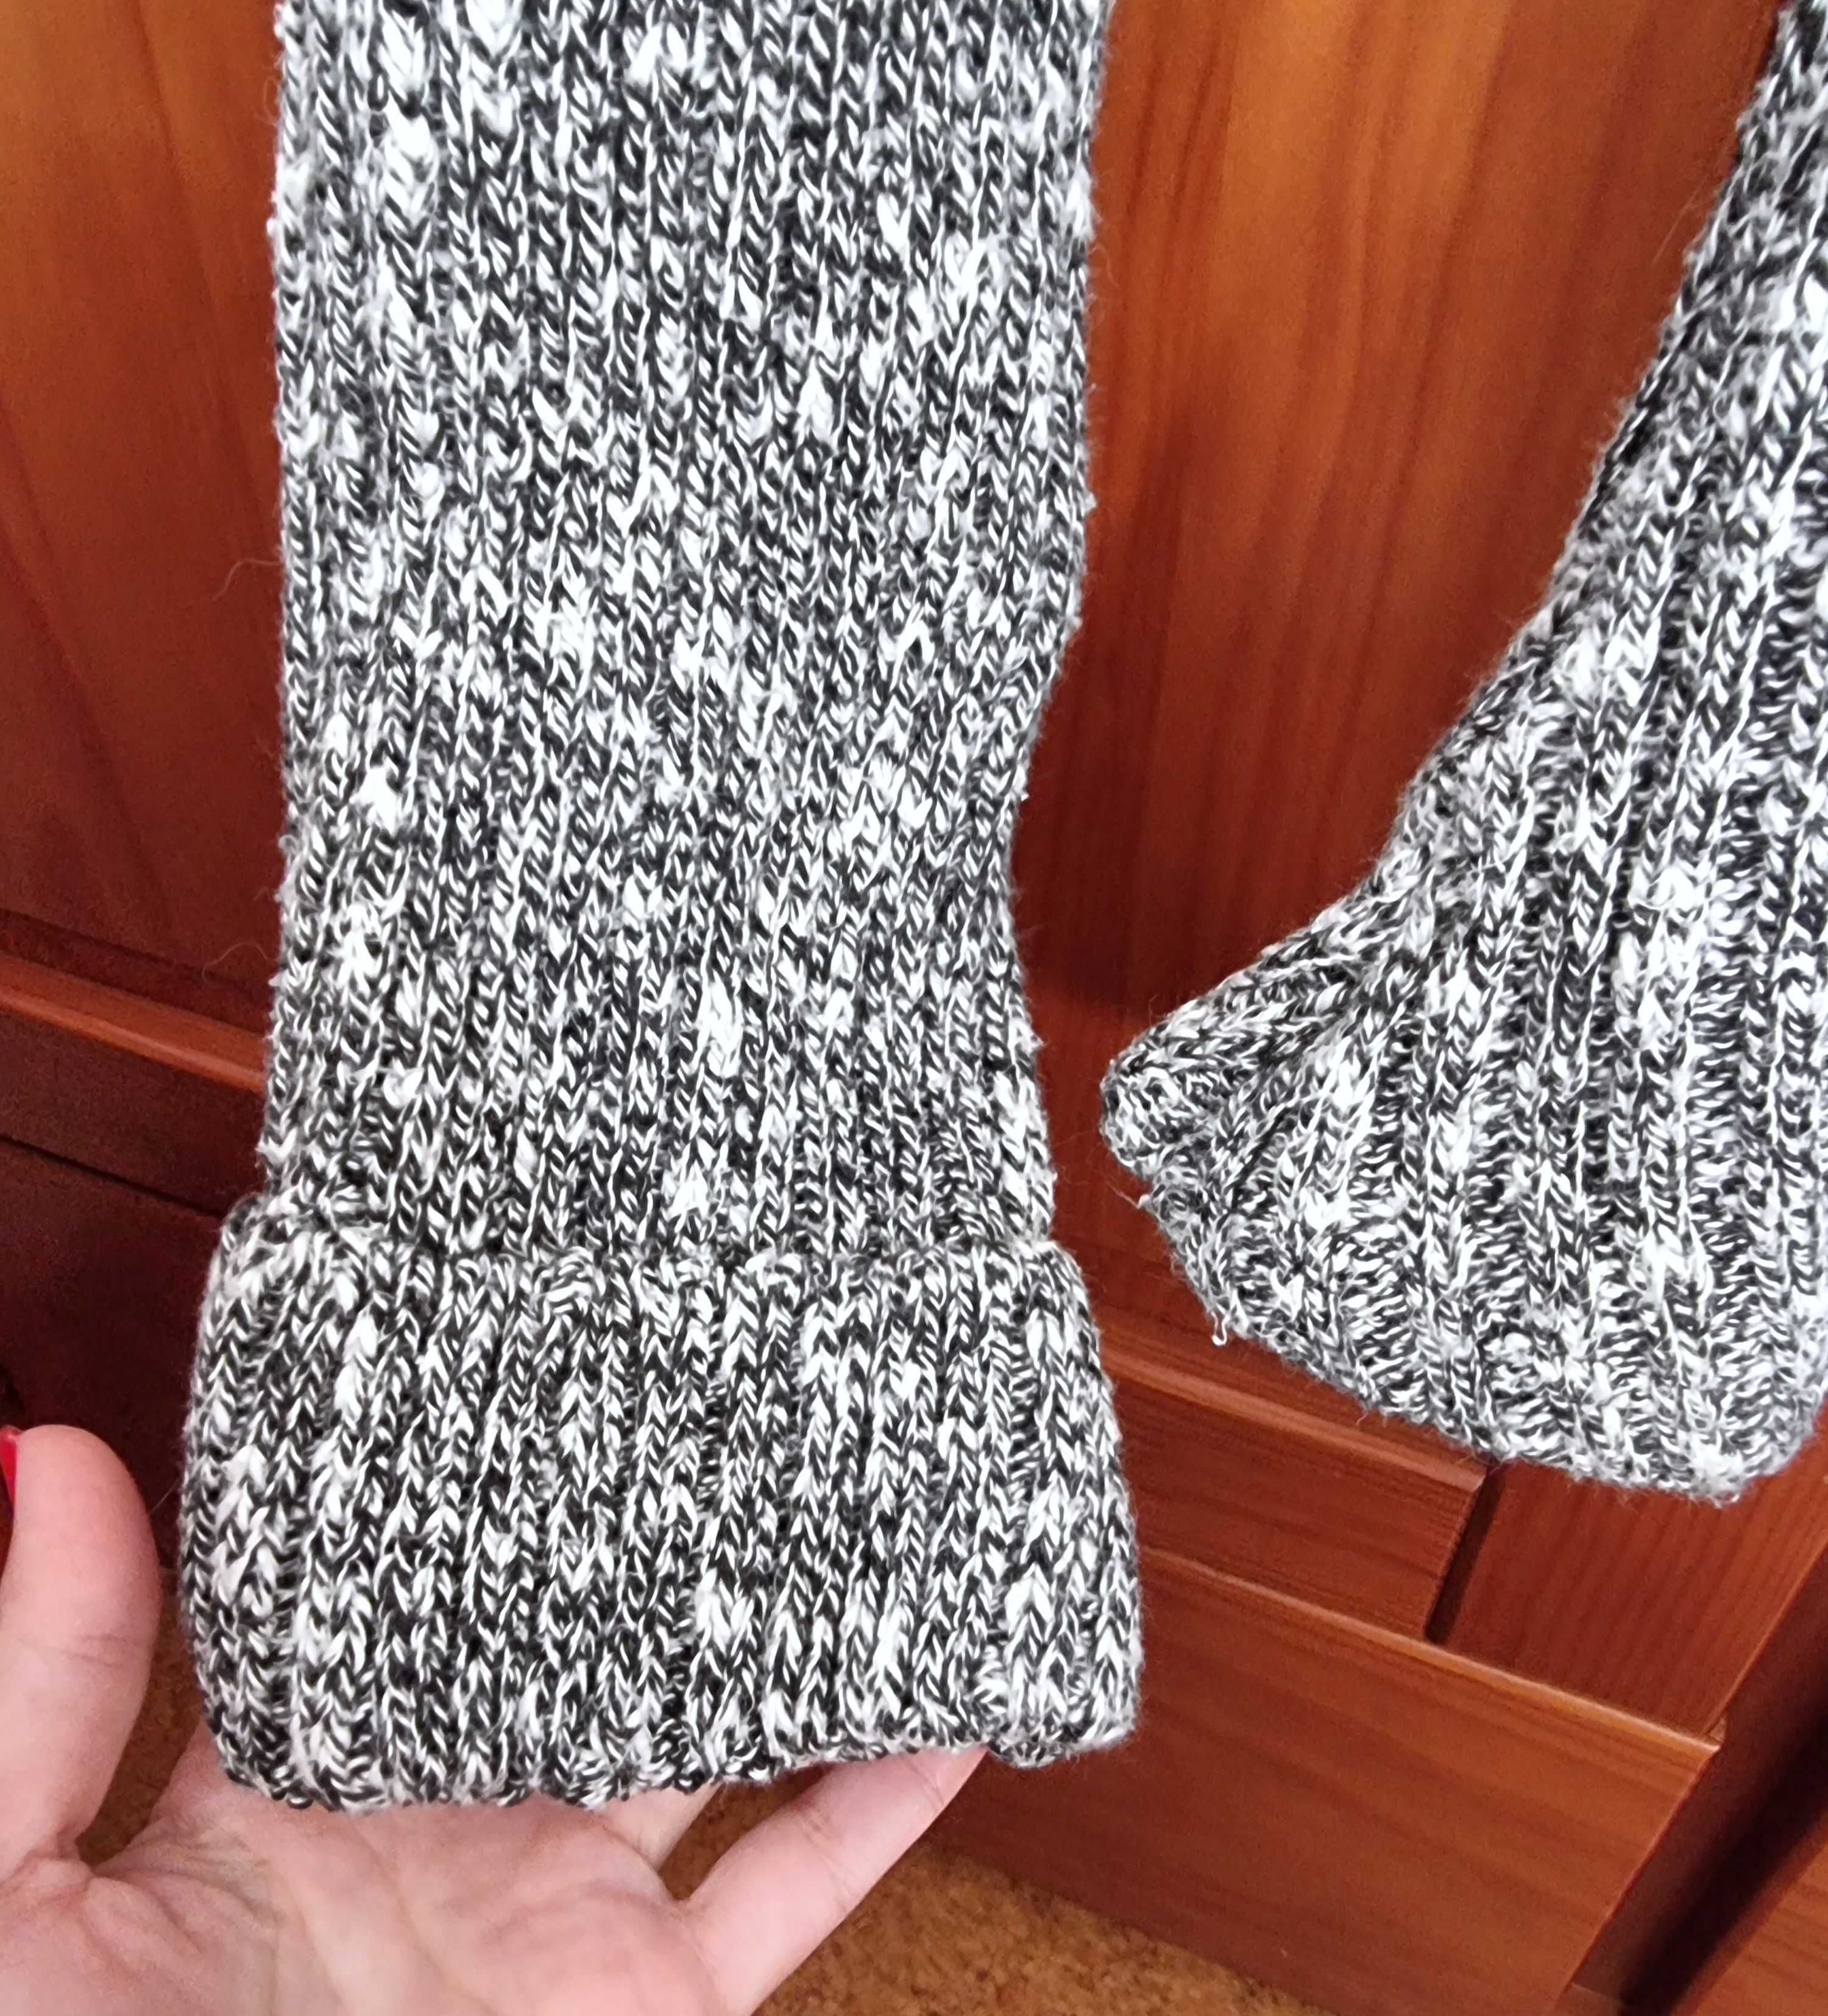 Camisola de malha com padrão em tons de cinzento/preto, tamanho XS/S